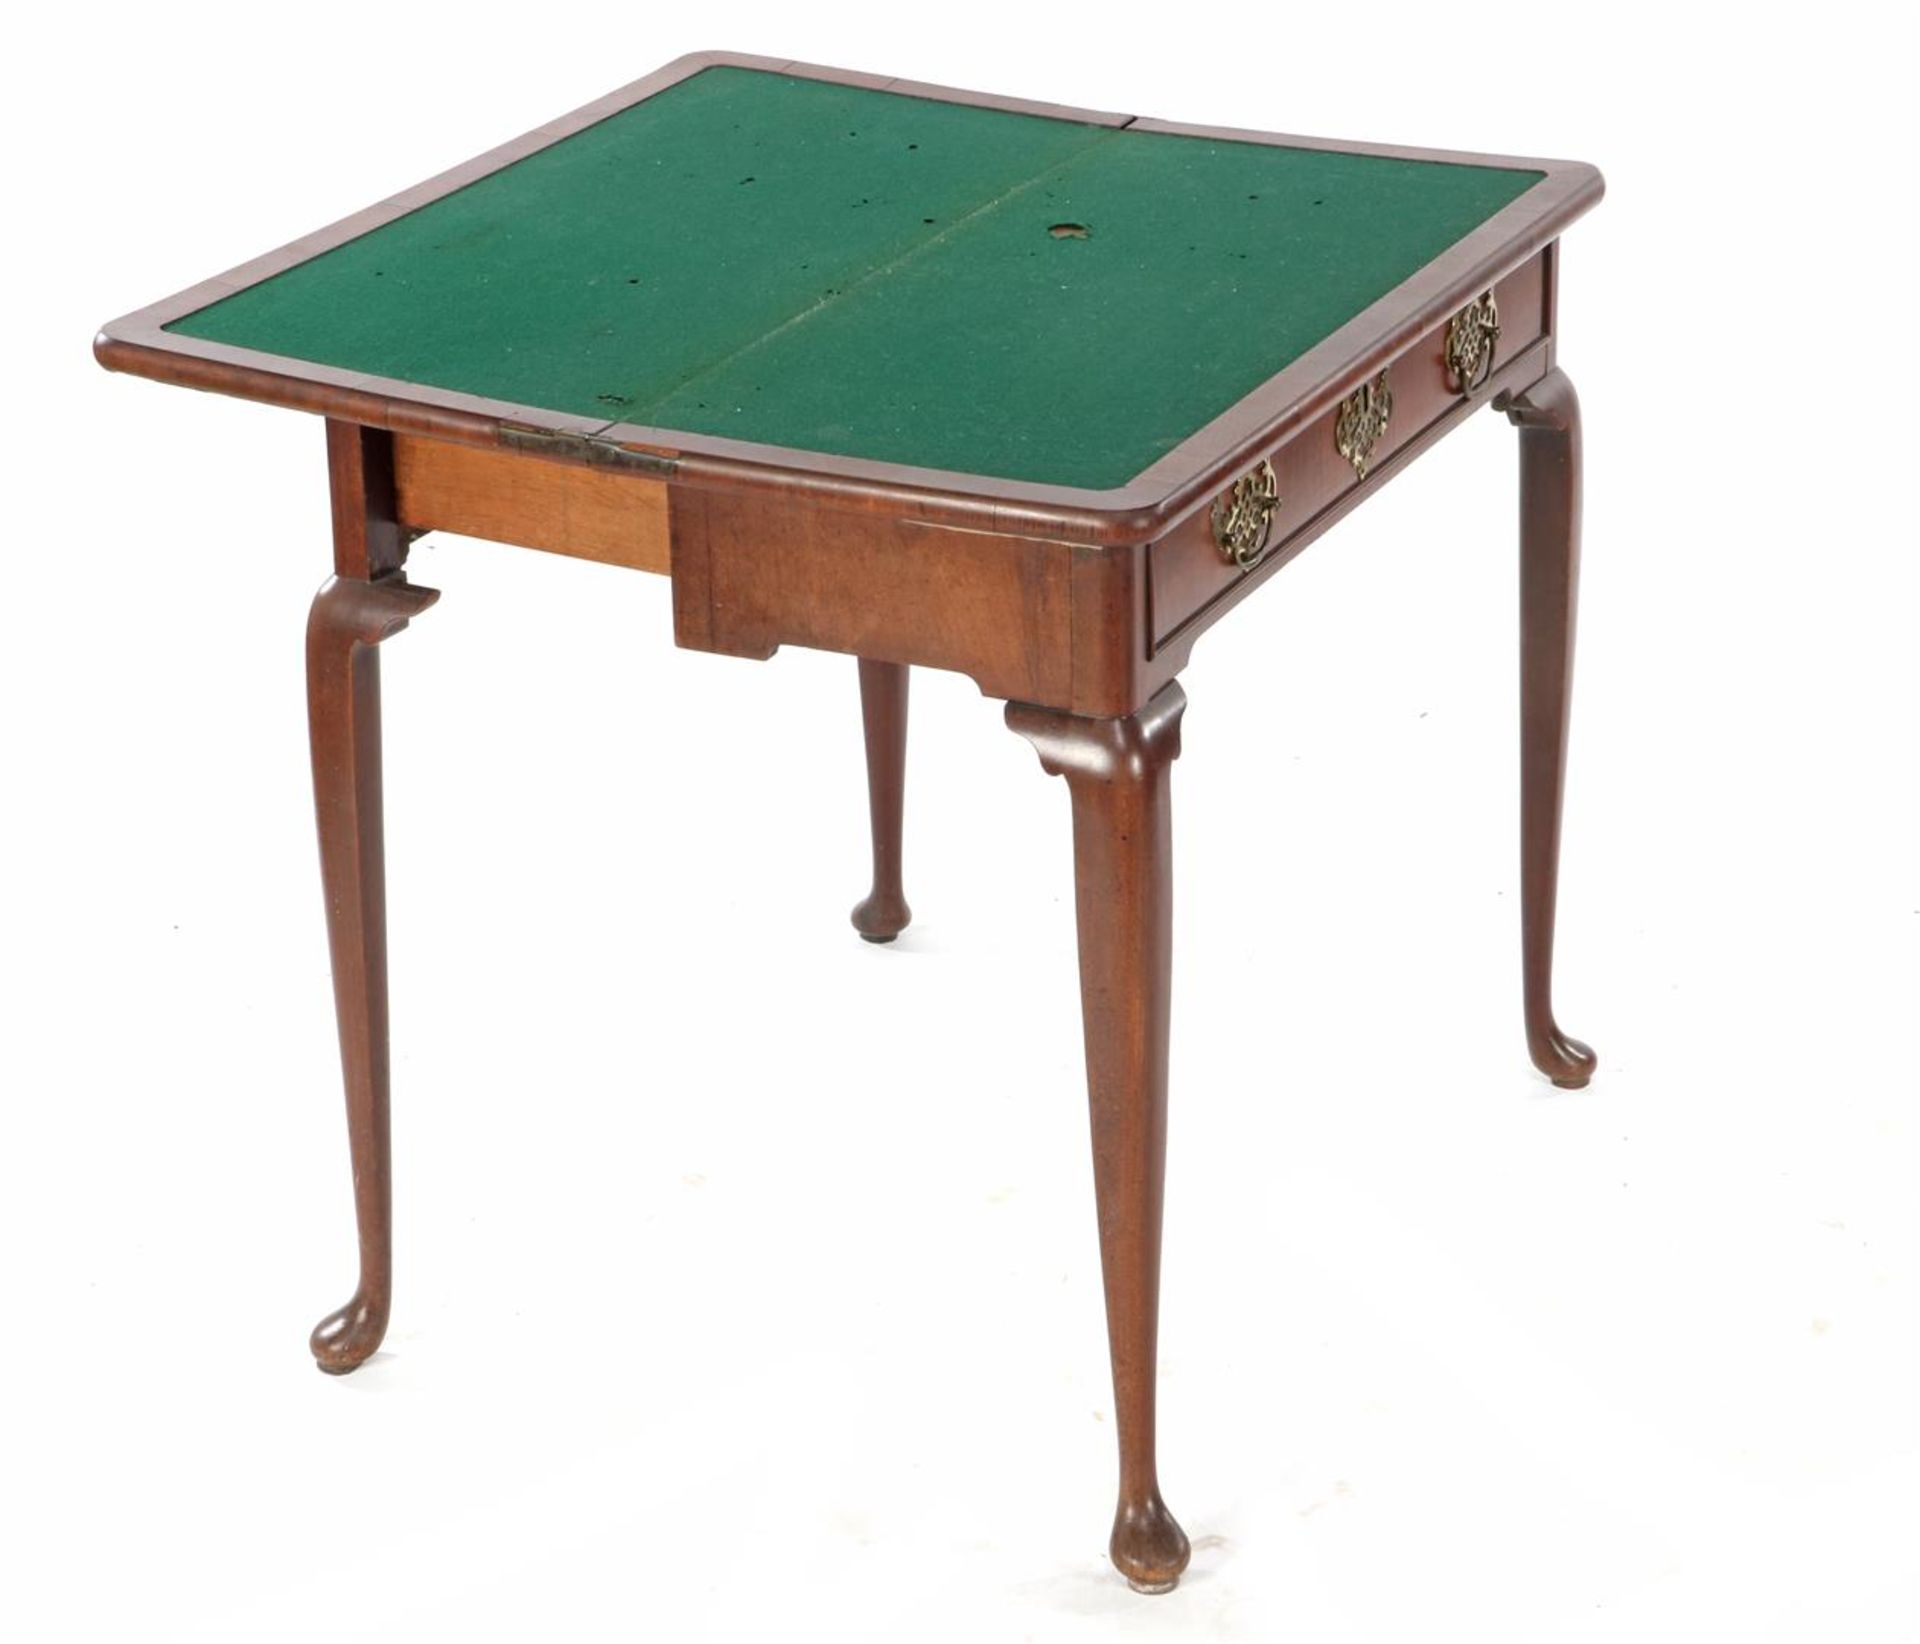 Walnut veneer on oak game table - Image 2 of 2